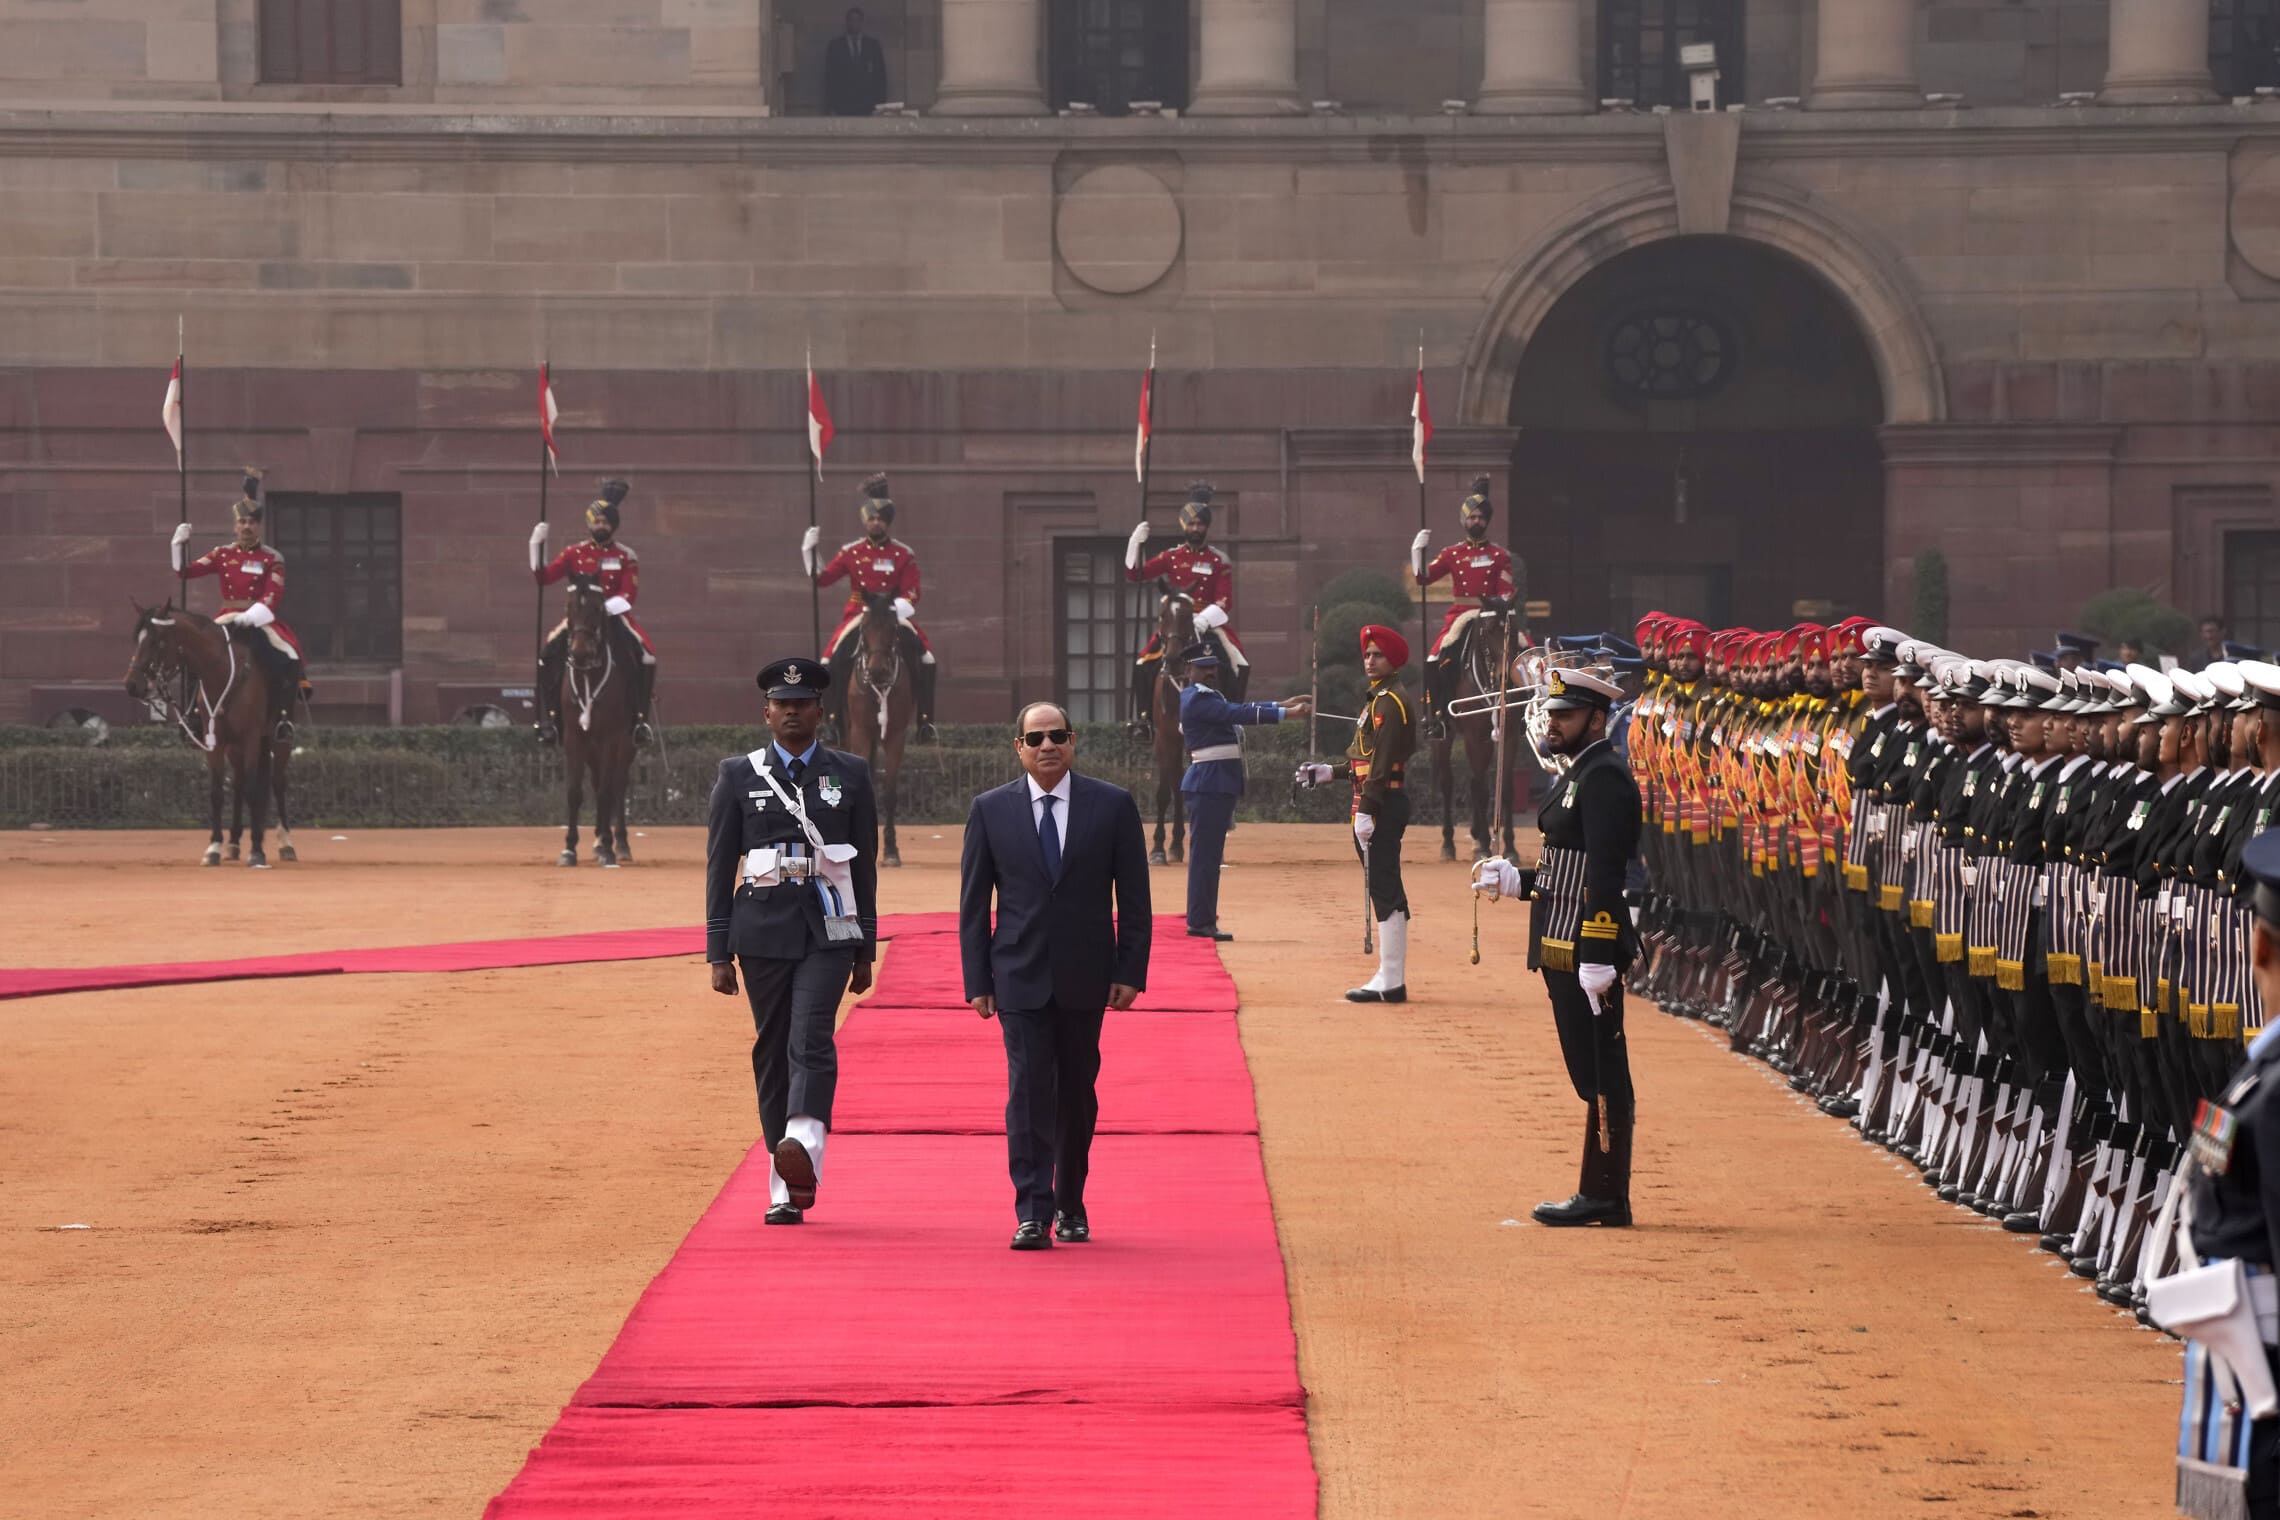 נשיא מצרים עבד אל־פתאח א־סיסי מתקבל על־ידי משמר הכבוד בארמון הנשיאות ההודי, ניו דלהי, 25 בינואר 2023 (צילום: AP Photo/Manish Swarup)